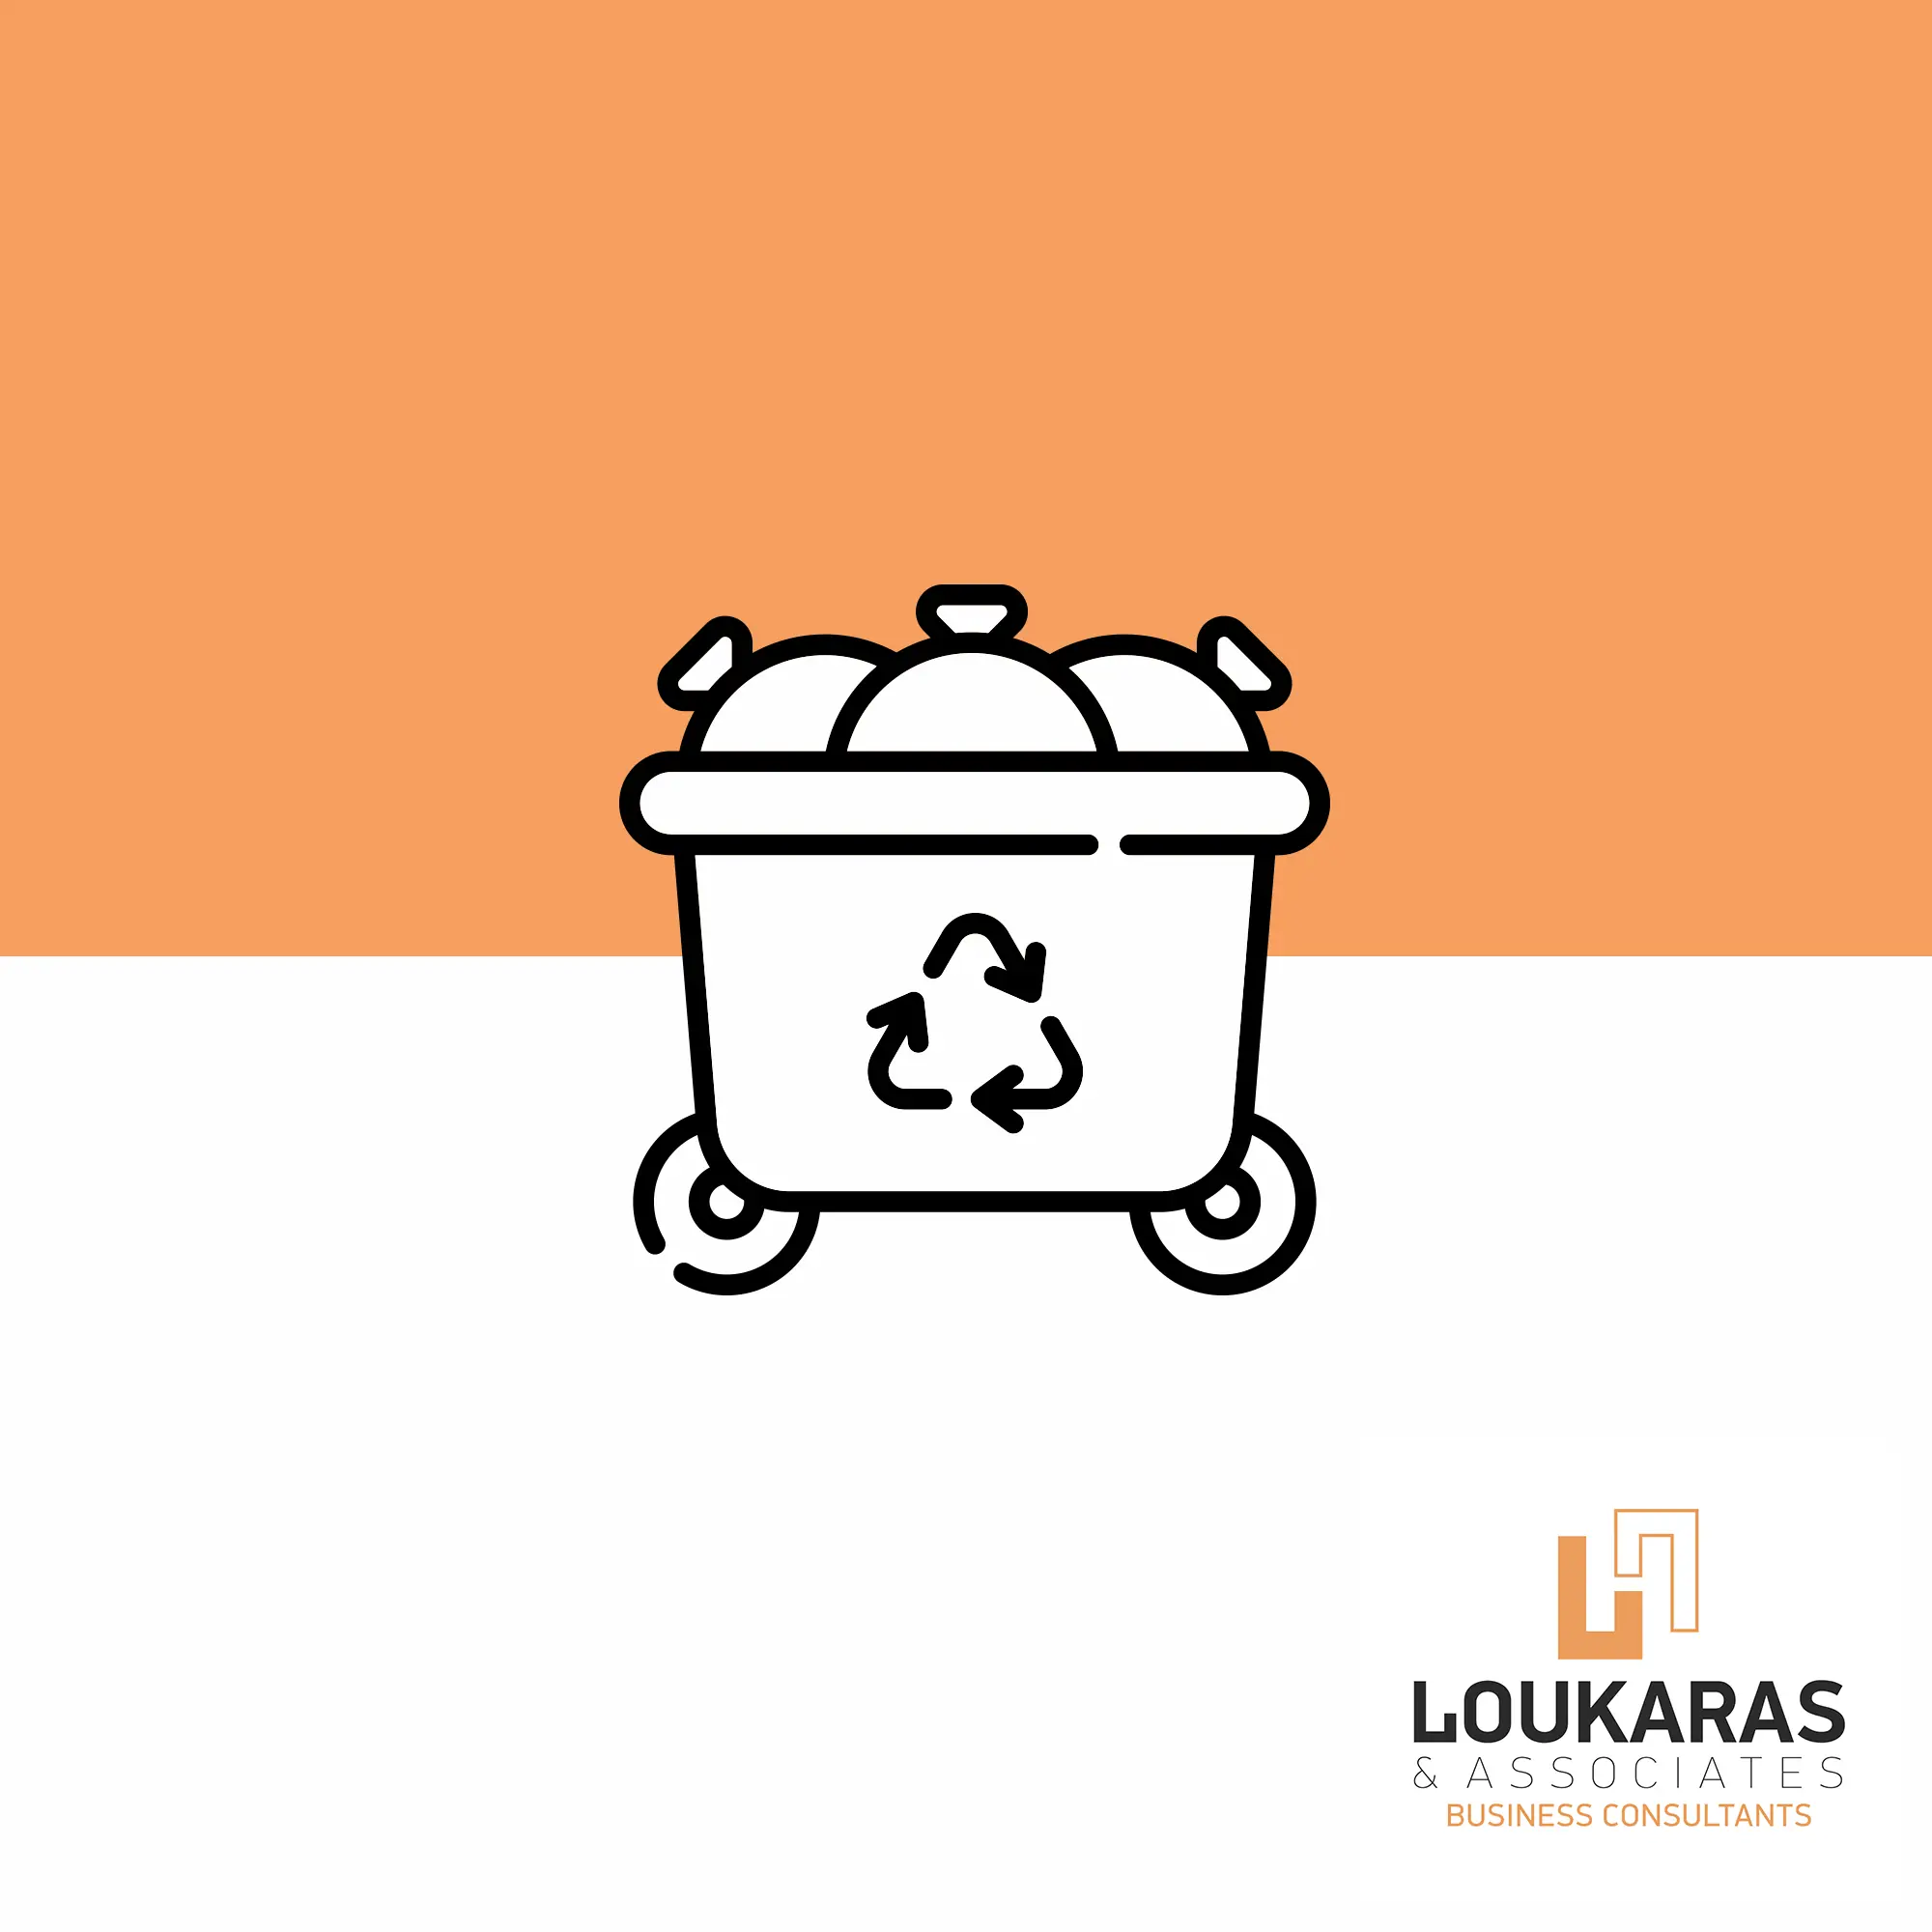 Δράσεις ολοκληρωμένης διαχείρισης βιο-αποβλήτων και αστικών στερεών αποβλήτων στην Περιφέρεια Νοτίου Αιγαίου